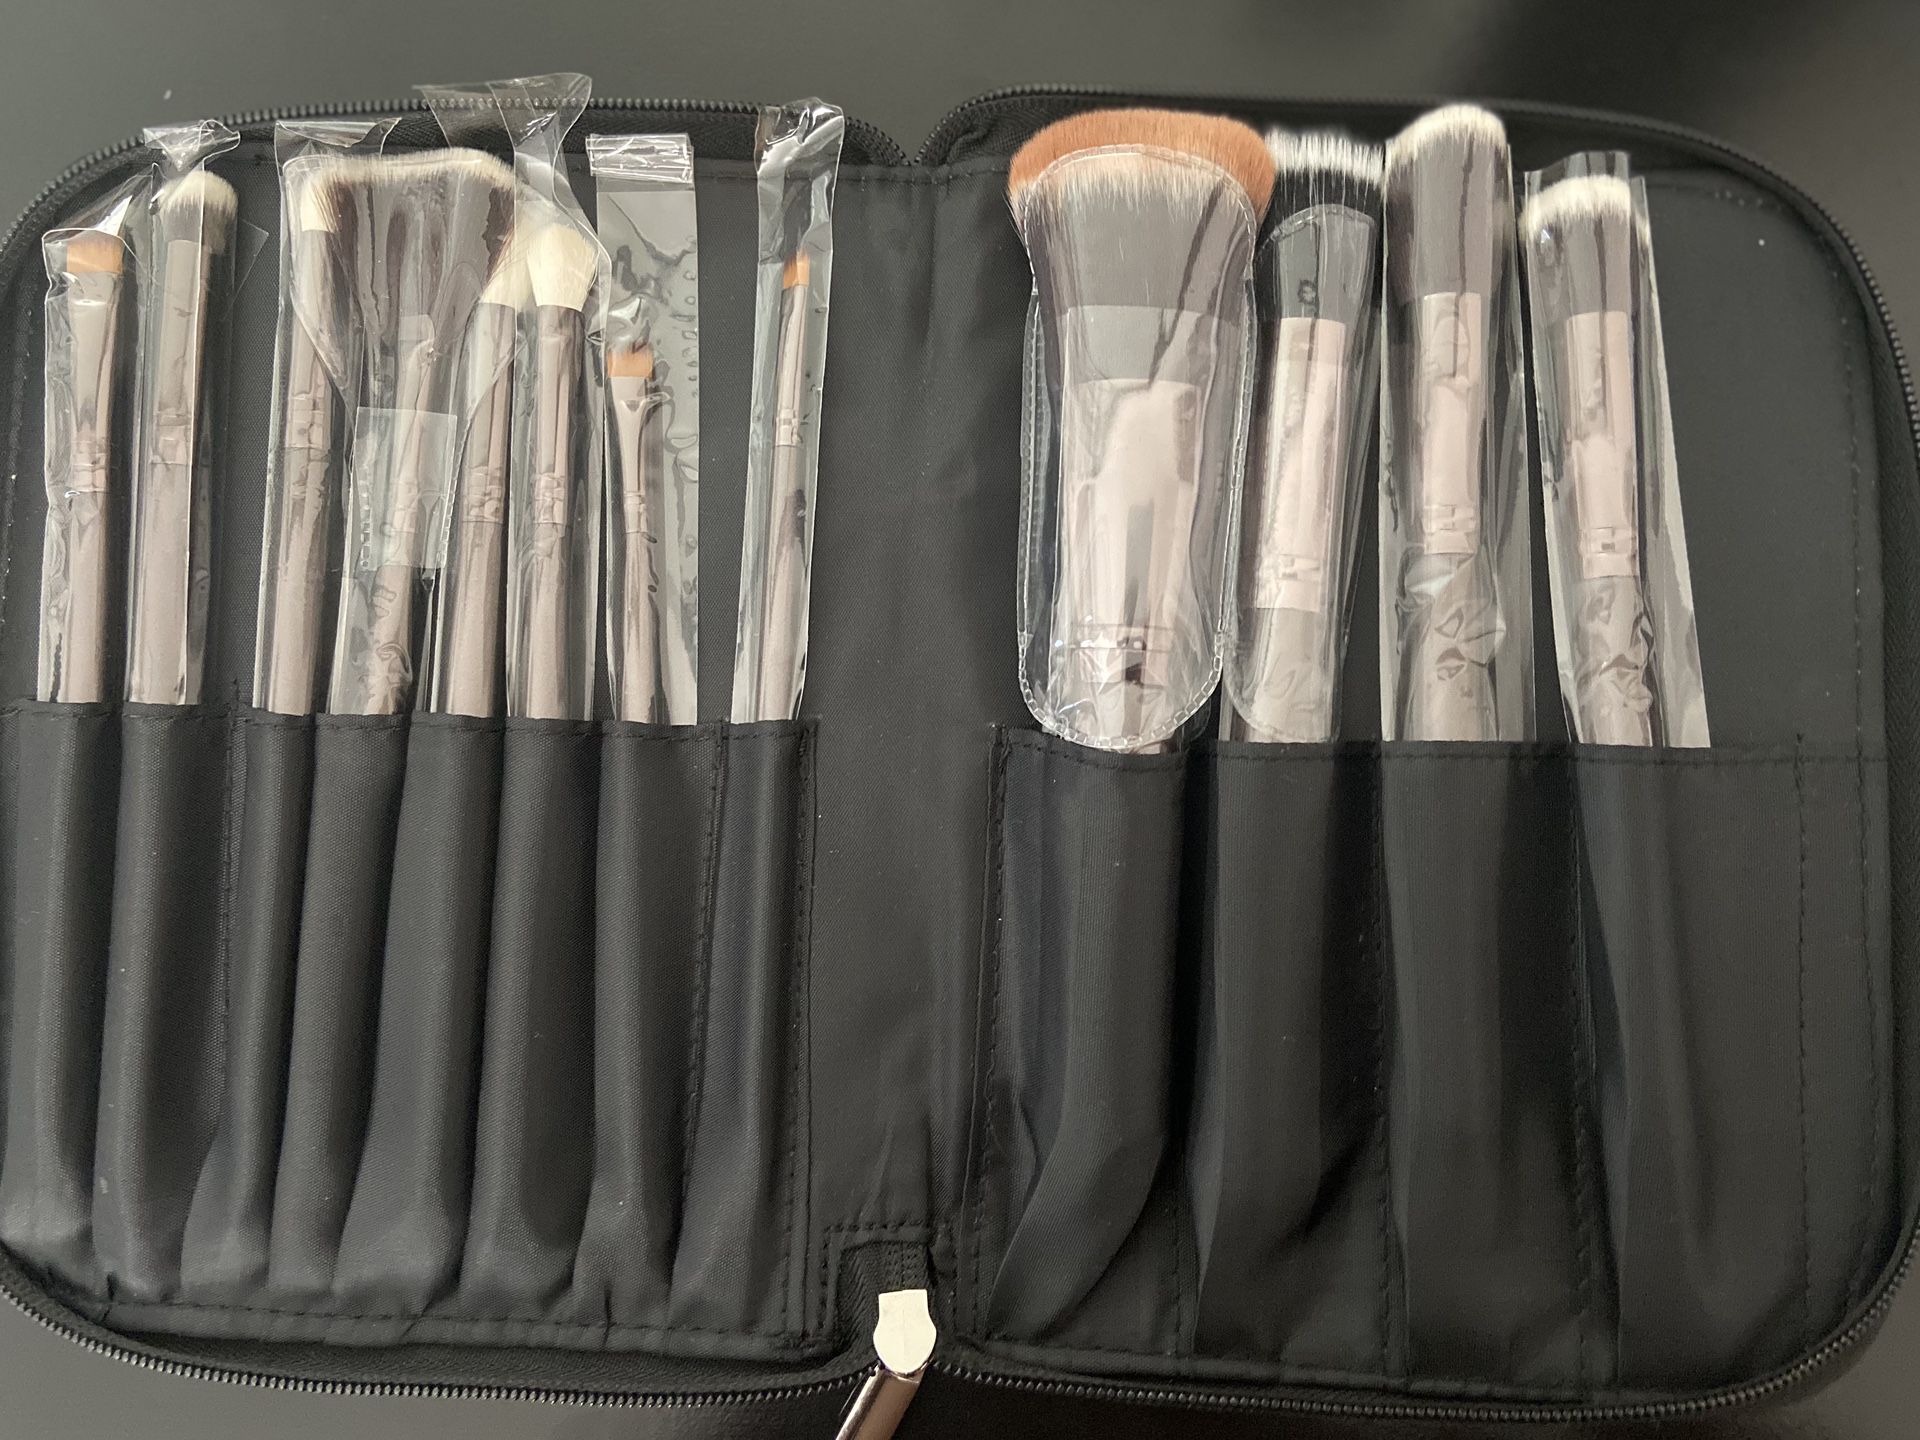 NEW Morphe Makeup Brush Set